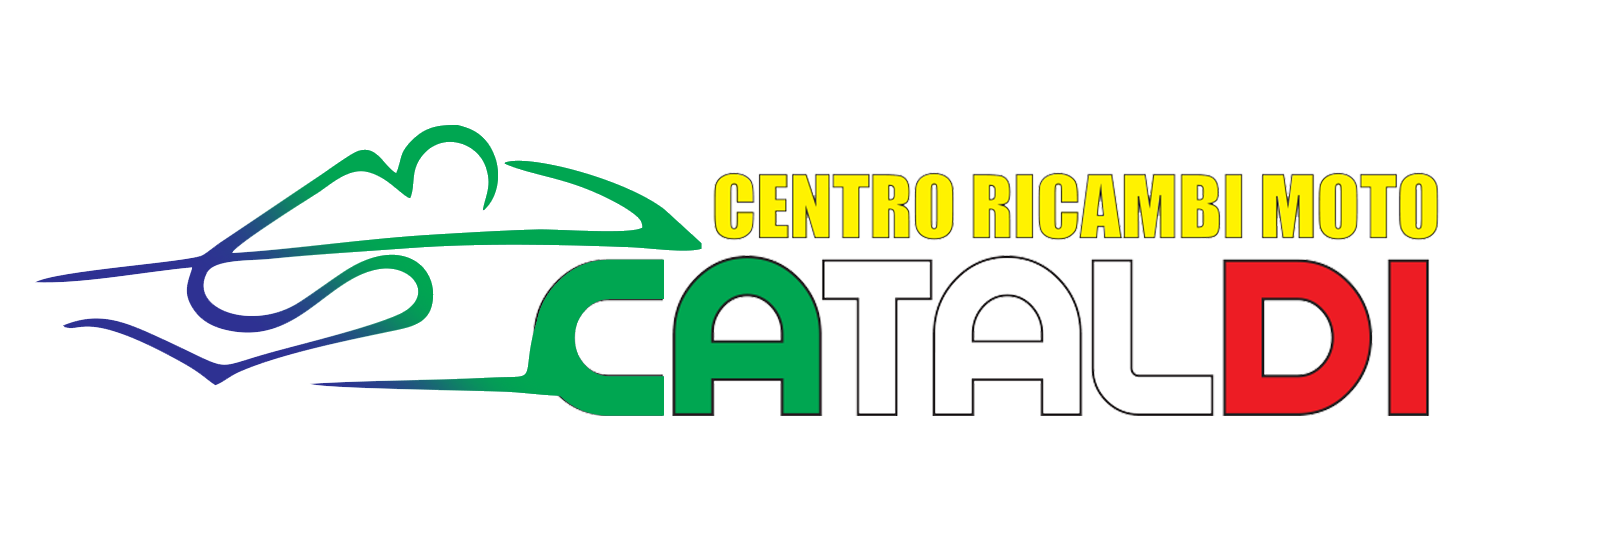 Ricambi Moto Cataldi